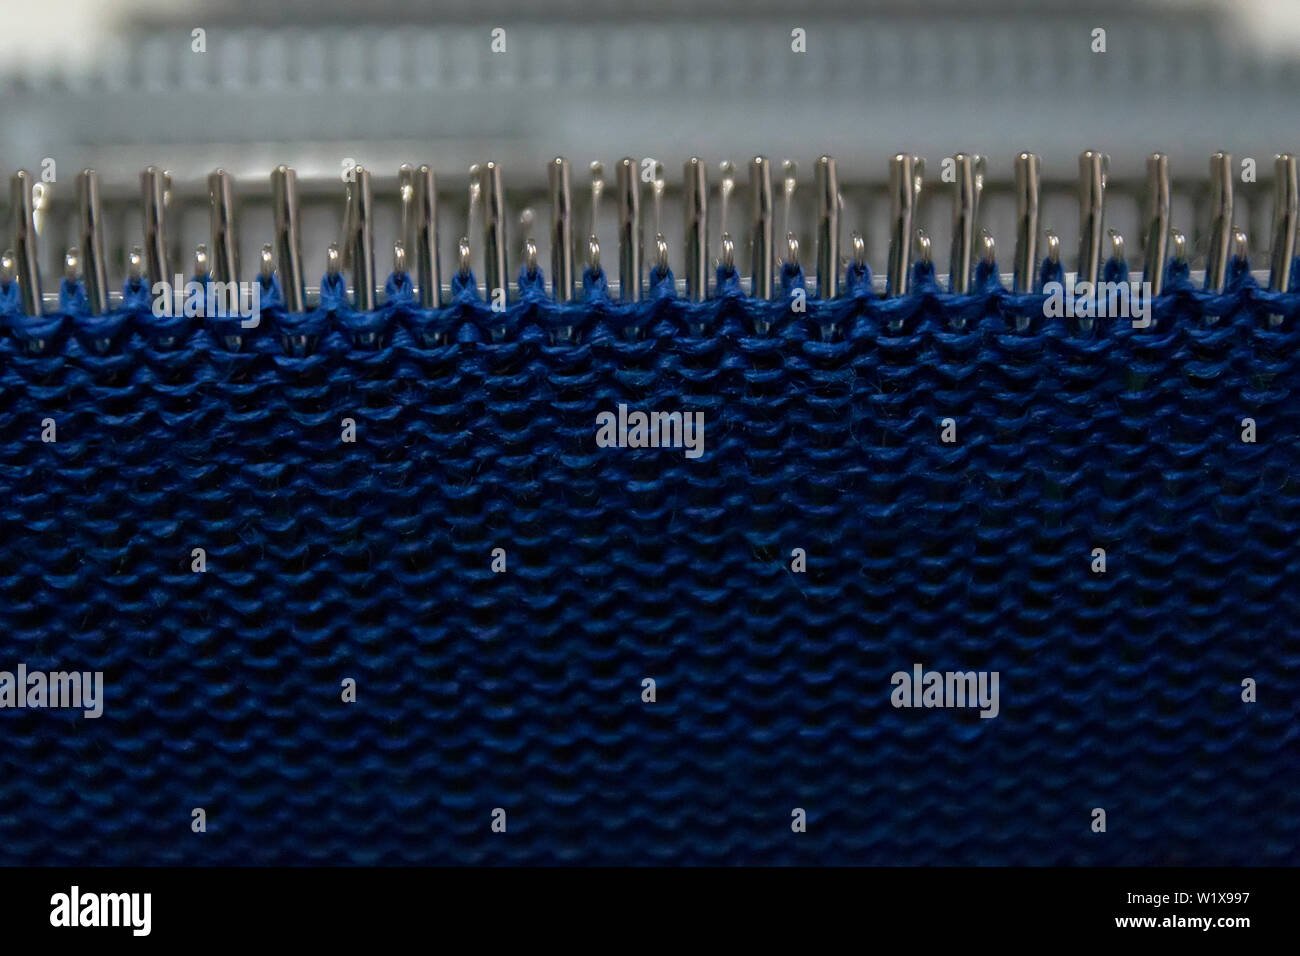 Manuale della macchina di lavorazione a maglia. Una macchina di lavorazione a maglia è un dispositivo utilizzato per creare tessuti a maglia. Foto Stock